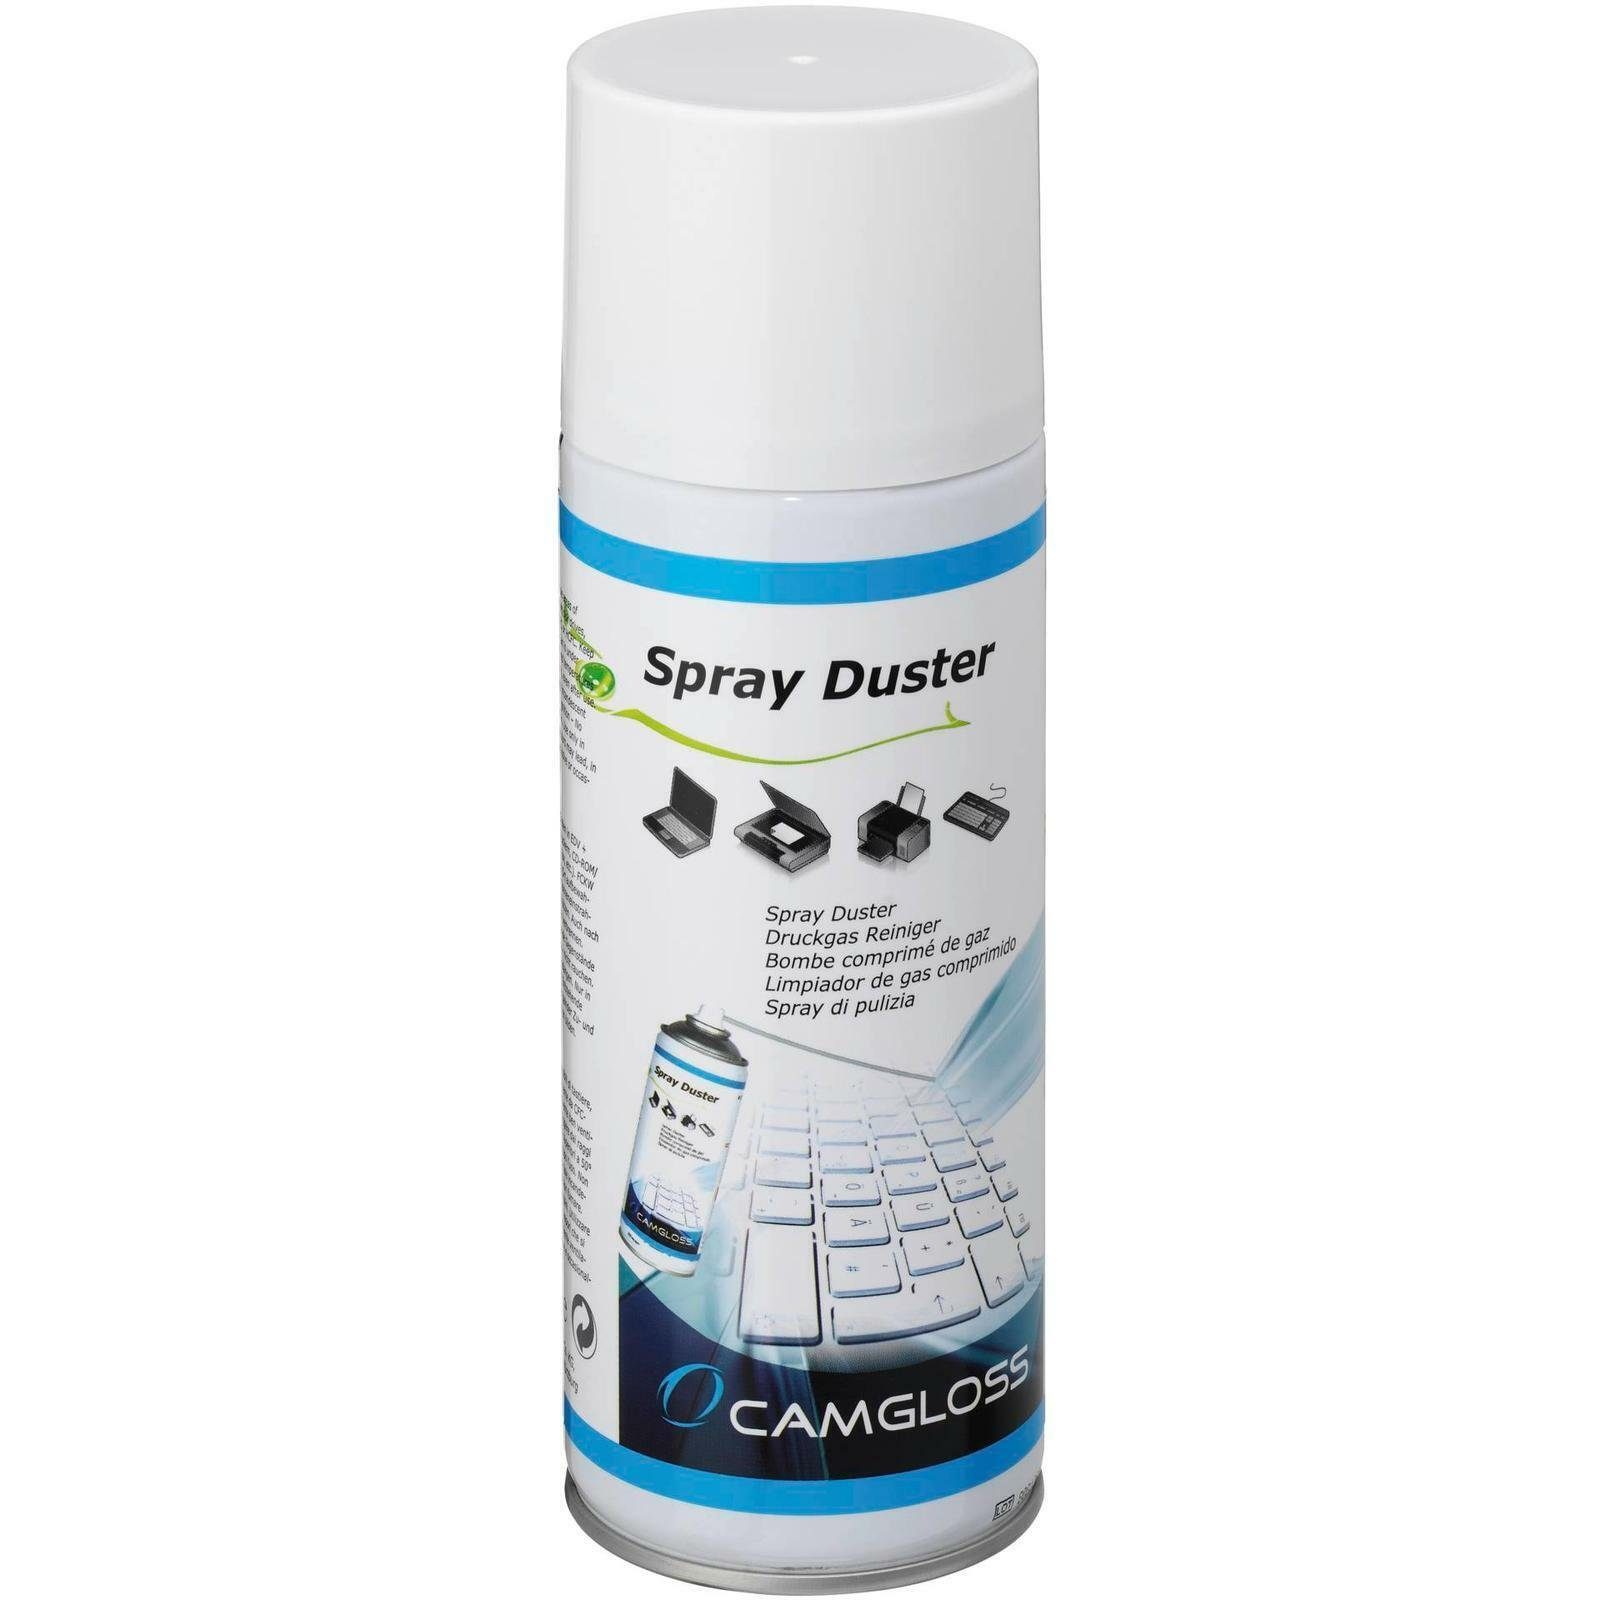 Camgloss Spray Duster - Druckgasspray - 400 ml Reinigungsspray